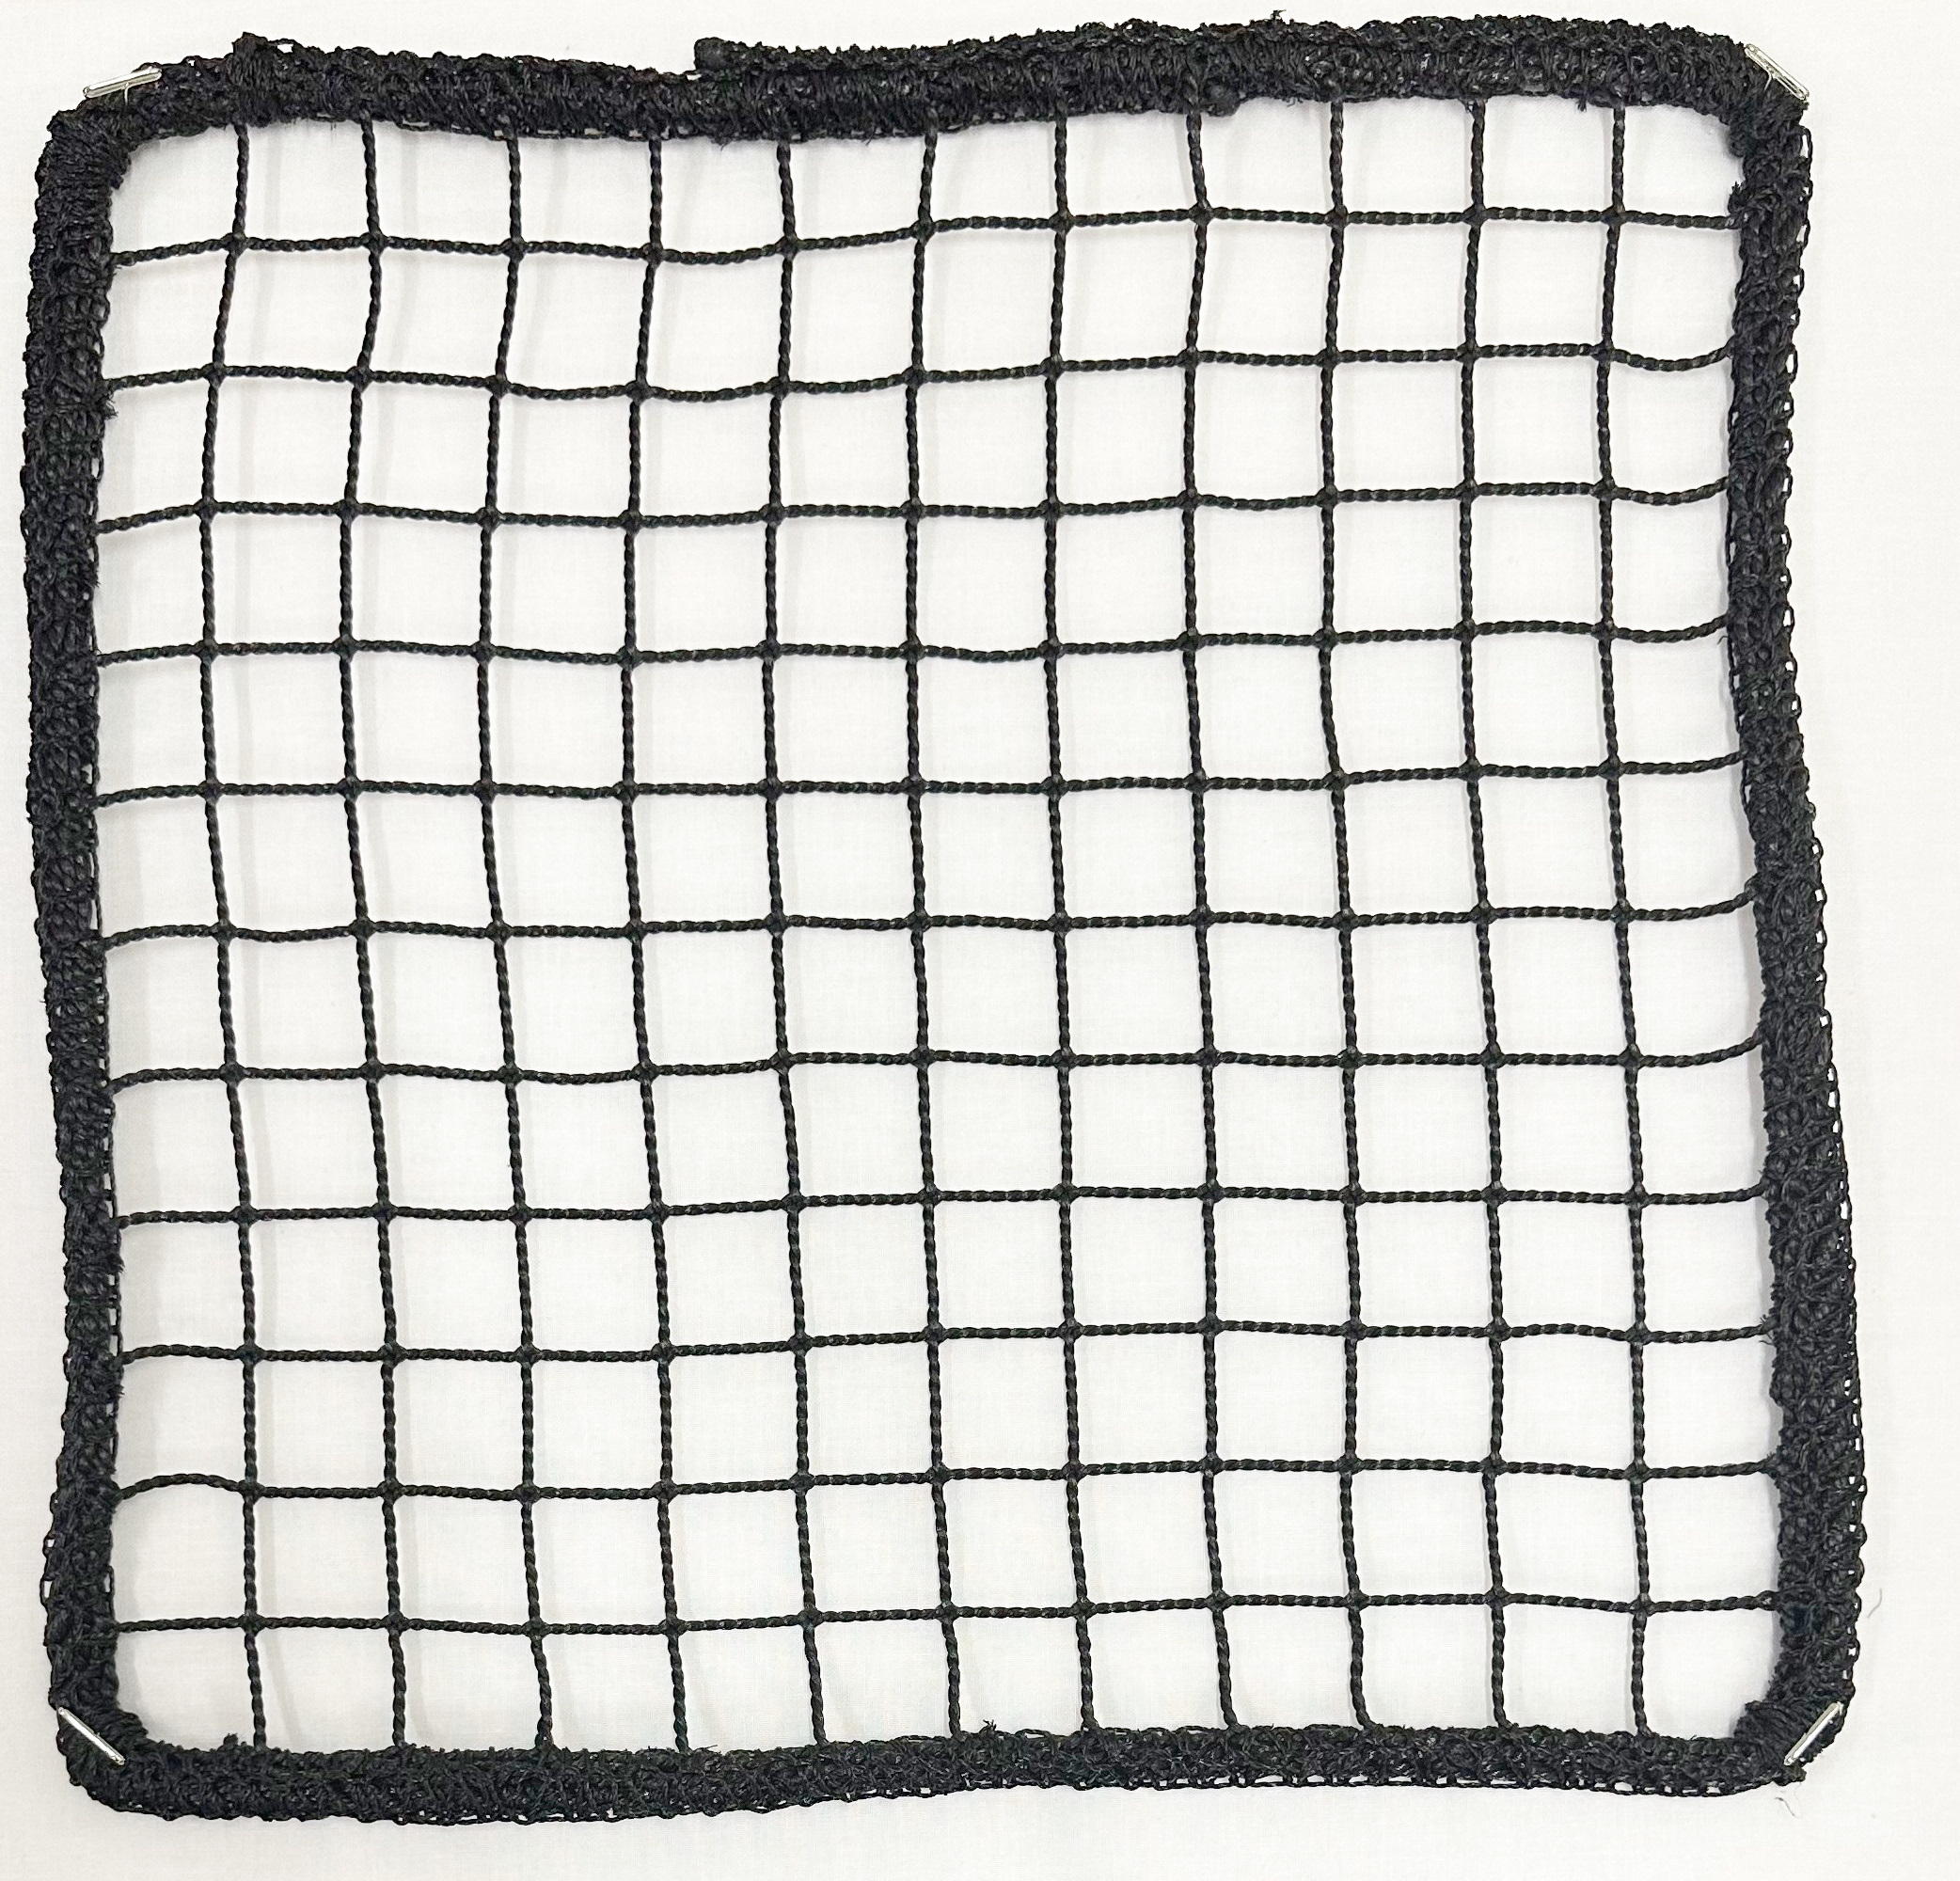 ゴルフネット(黒・白・茶・青・シルバー) 9.5m×3.3m 国内正規流通品